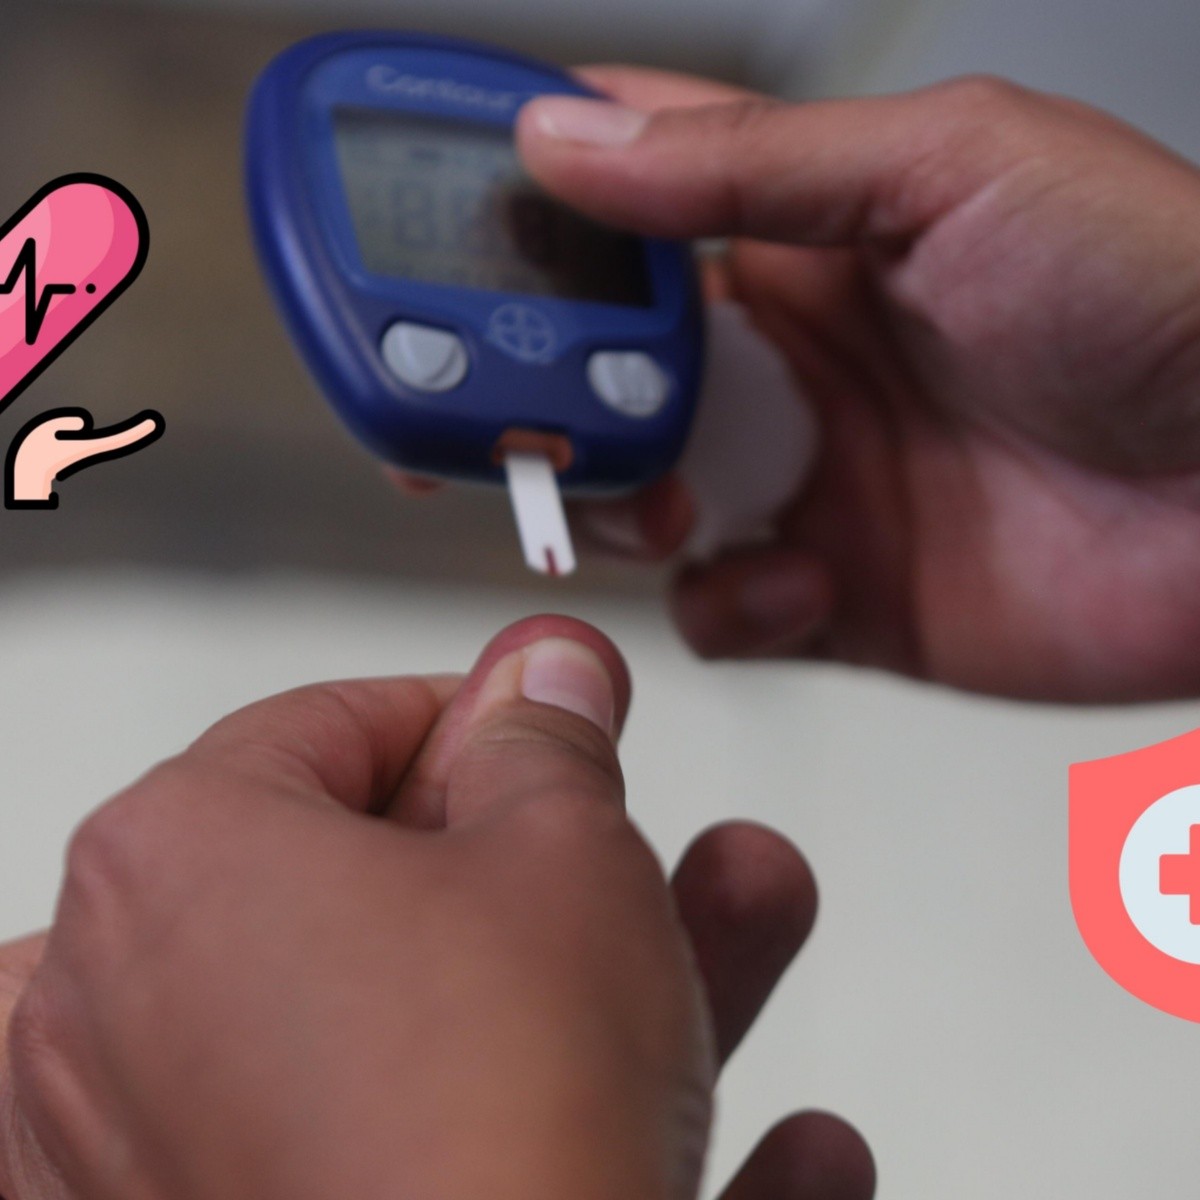 Tendrás que esperar un poco más para el seguimiento de la glucosa en sangre  en los relojes inteligentes - Digital Trends Español